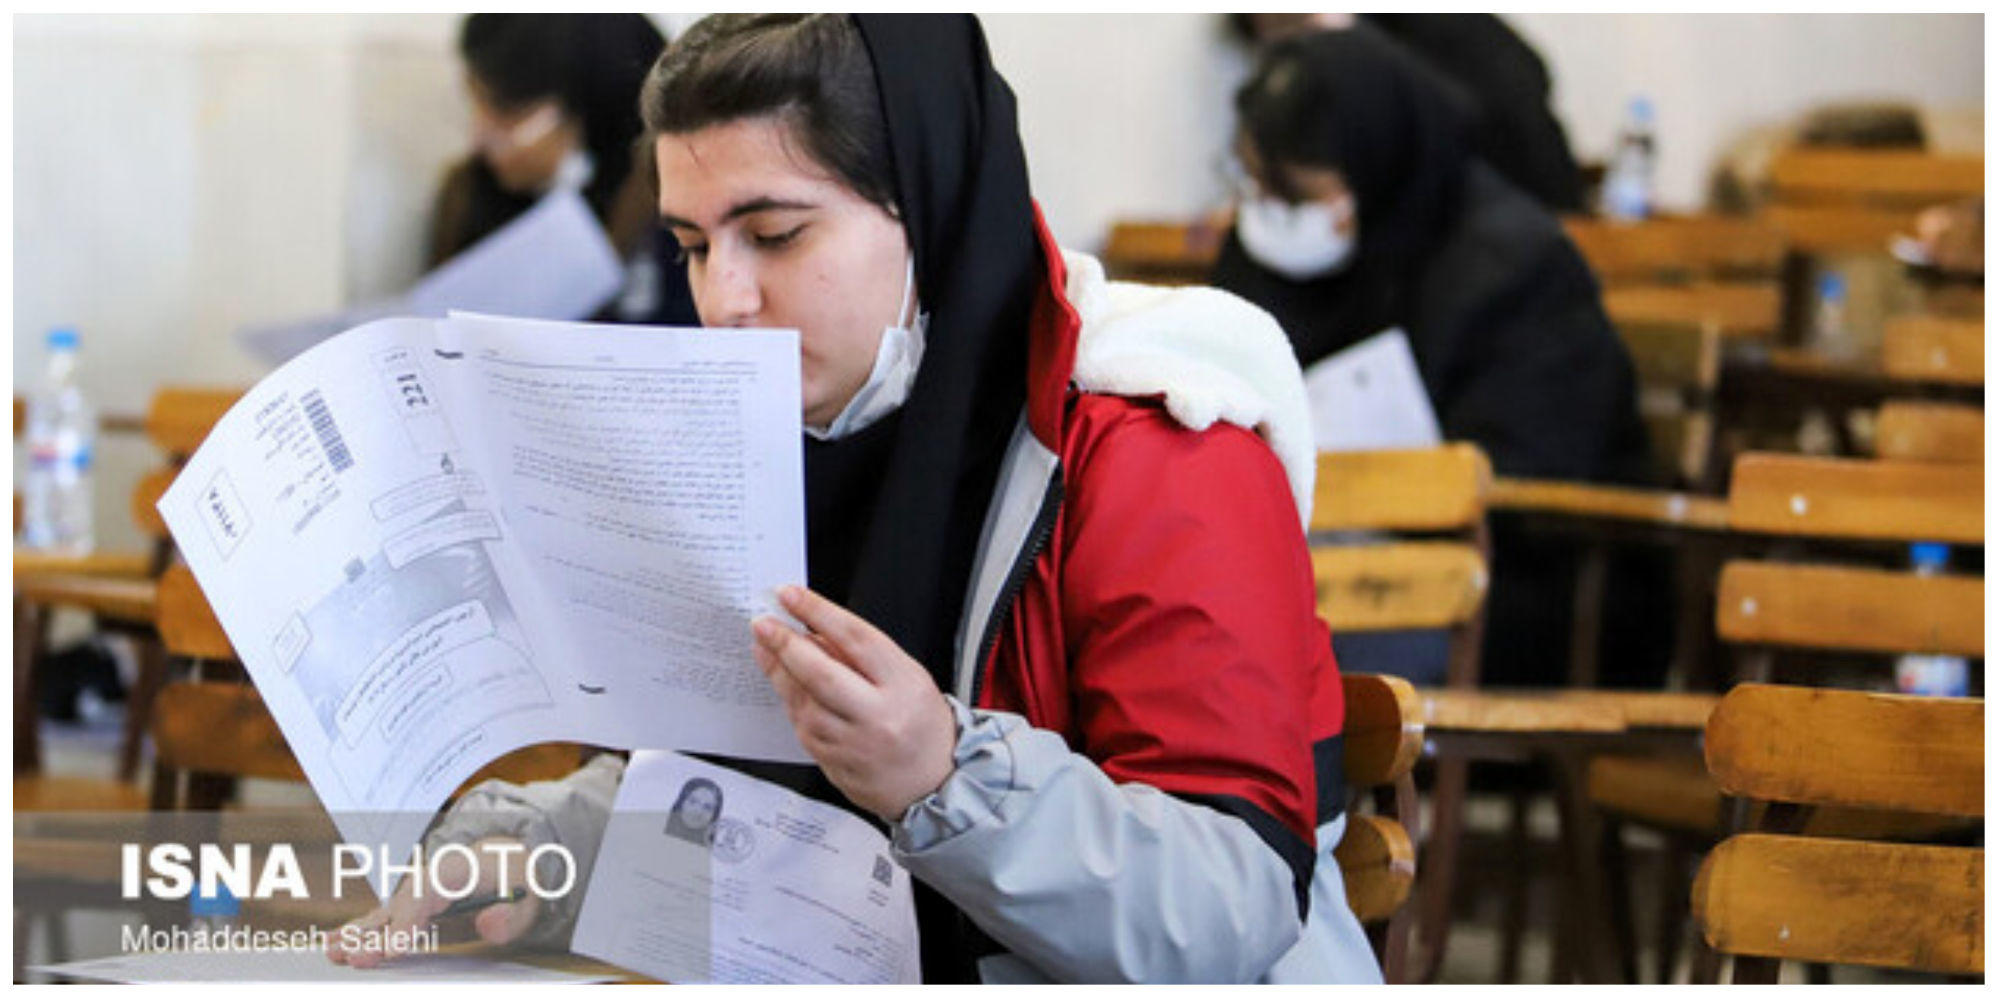 آمار نگران کننده از عملکرد آموزش و پرورش در 17 استان